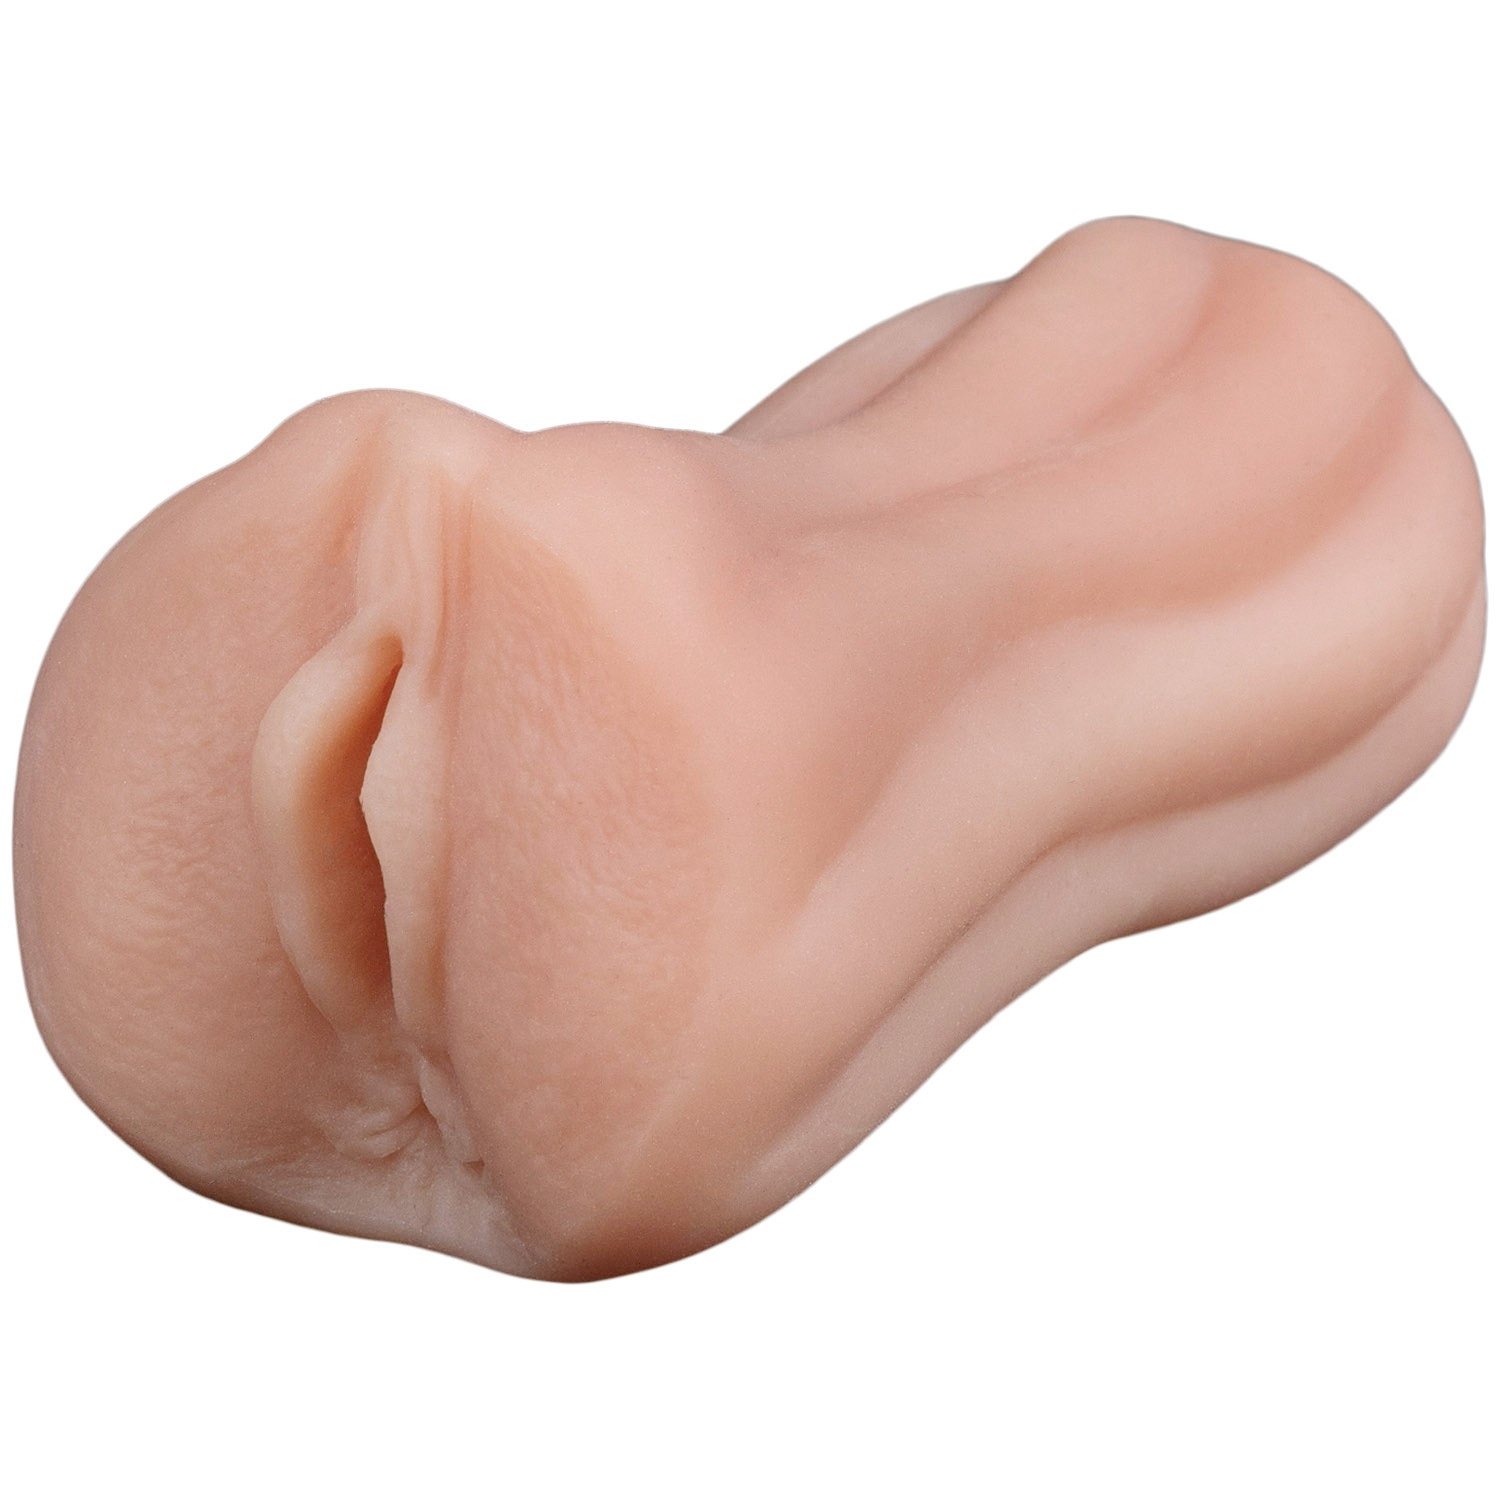 MR.MEMBR Anabella Realistisk Pocket Pussy - Nude | Män//Onaniprodukter//REA för Män//REA för Män//REA//Handjob Stroker//Realistiska Vaginor//MR.MEMBR | Intimast